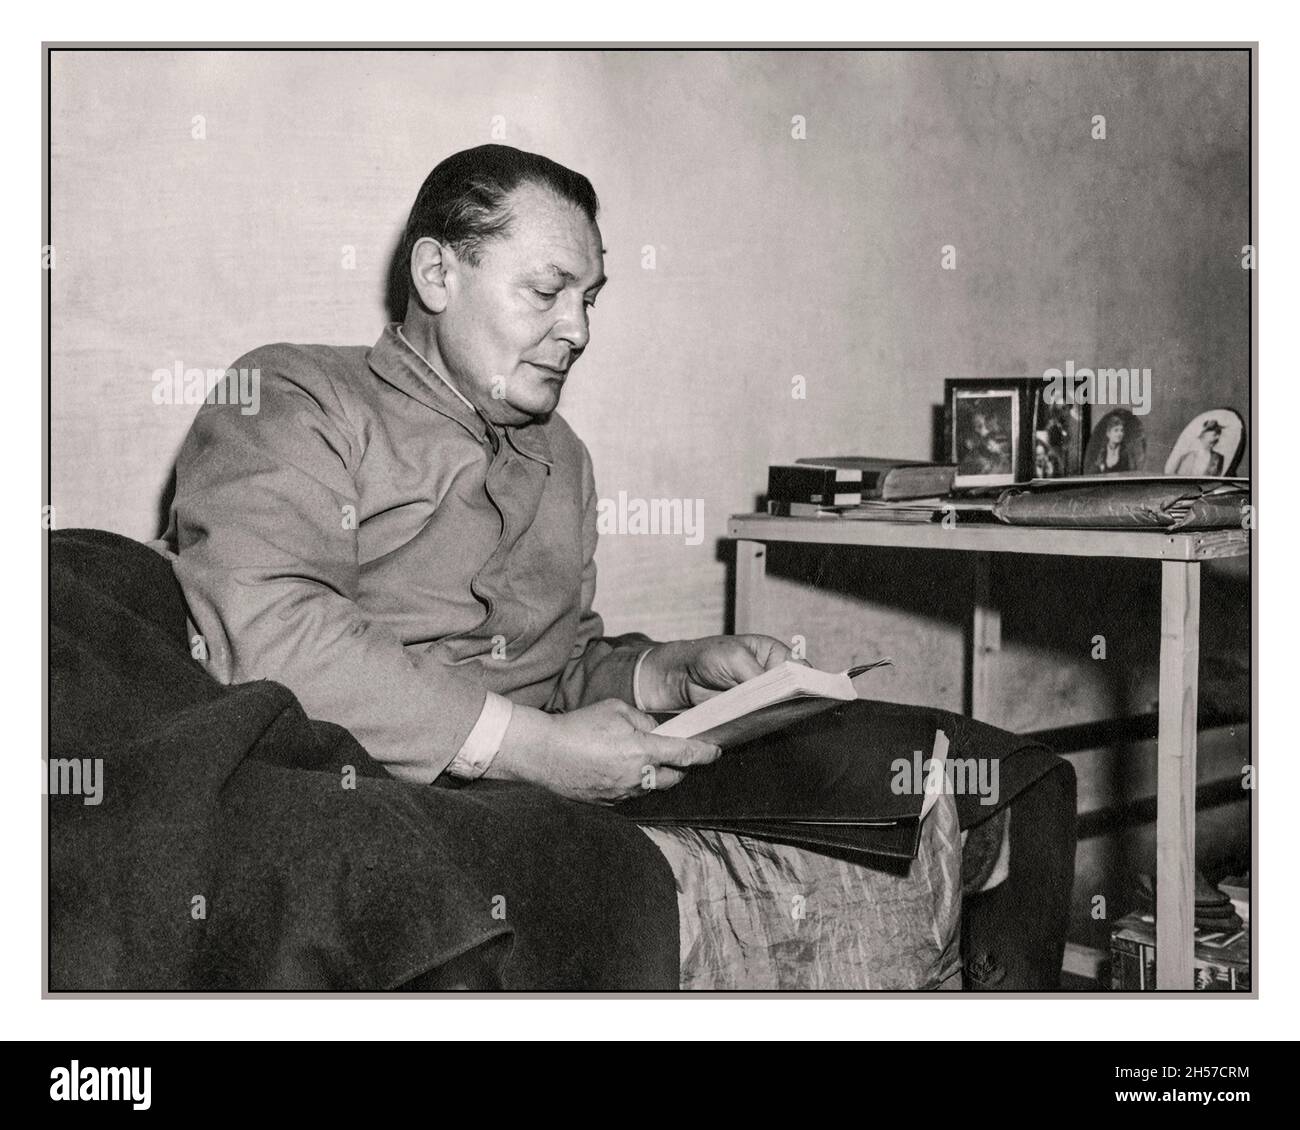 GÖRING NÜRNBERGER GEFÄNGNISZELLE Kommandant des Luftwaffenregimes Nazi Hermann Göring, fotografiert in seiner Gefängniszelle in Nürnberg, Deutschland, während der Nürnberger Prozesse. Göring wird gesehen, wie er ein Buch liest, während er in seiner Zelle auf seinem Bett liegt. 21. Dezember 1945 Hermann Wilhelm Göring (oder Göring) 12. Januar 1893 – 15. Oktober 1946) war ein deutscher Politiker, Militärführer und verurteilter Kriegsverbrecher. Er war eine der mächtigsten Persönlichkeiten der Nazi-Partei, die Deutschland von 1933 bis 1945 regierte. In seiner Zelle kam Selbstmord, um den Henker zu betrügen. Stockfoto